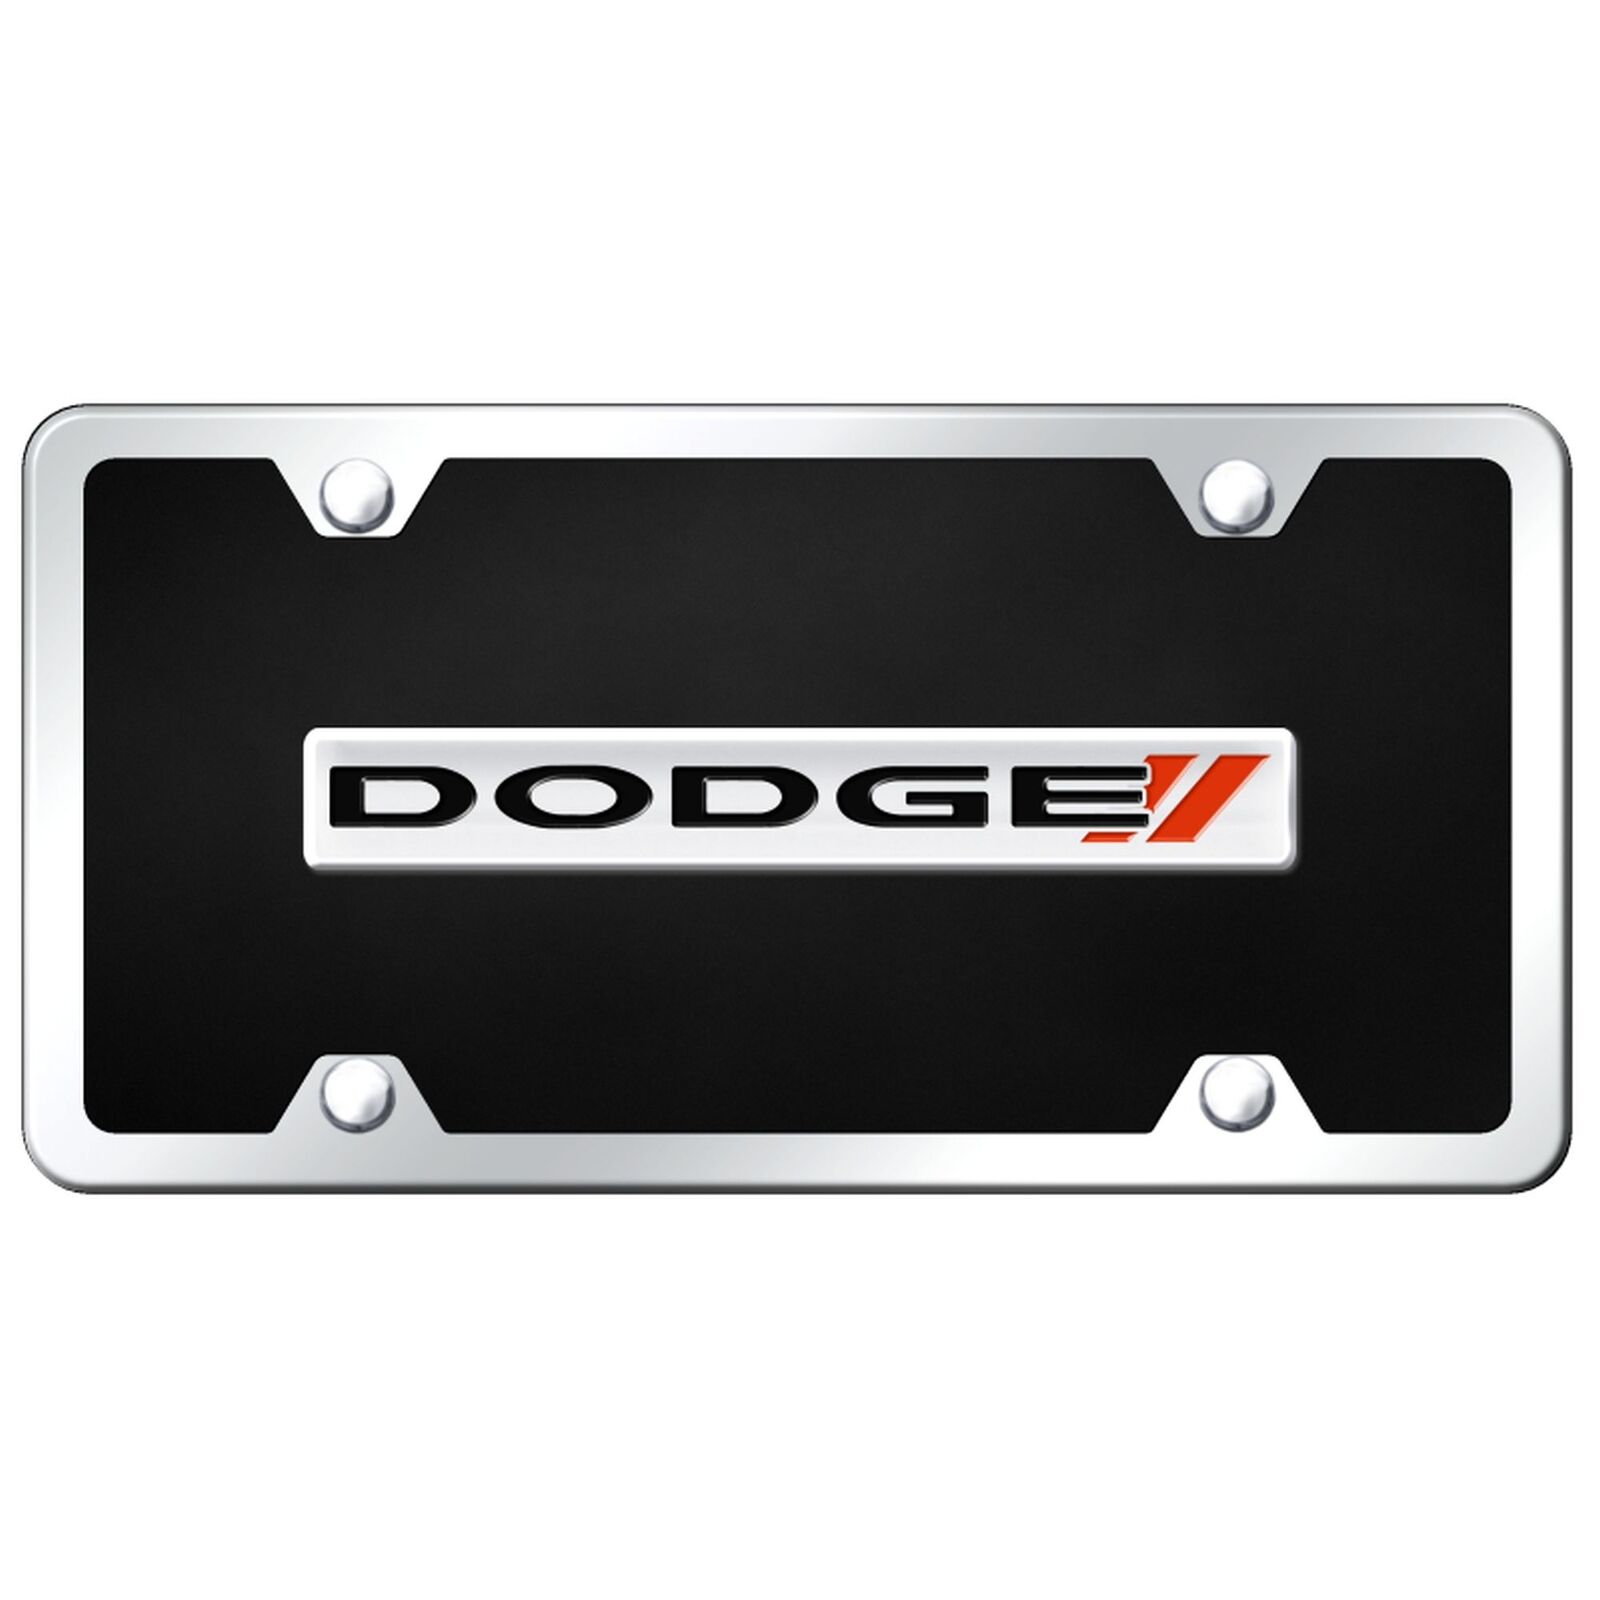 Dodge New License Plate Kit (Chrome on Black)